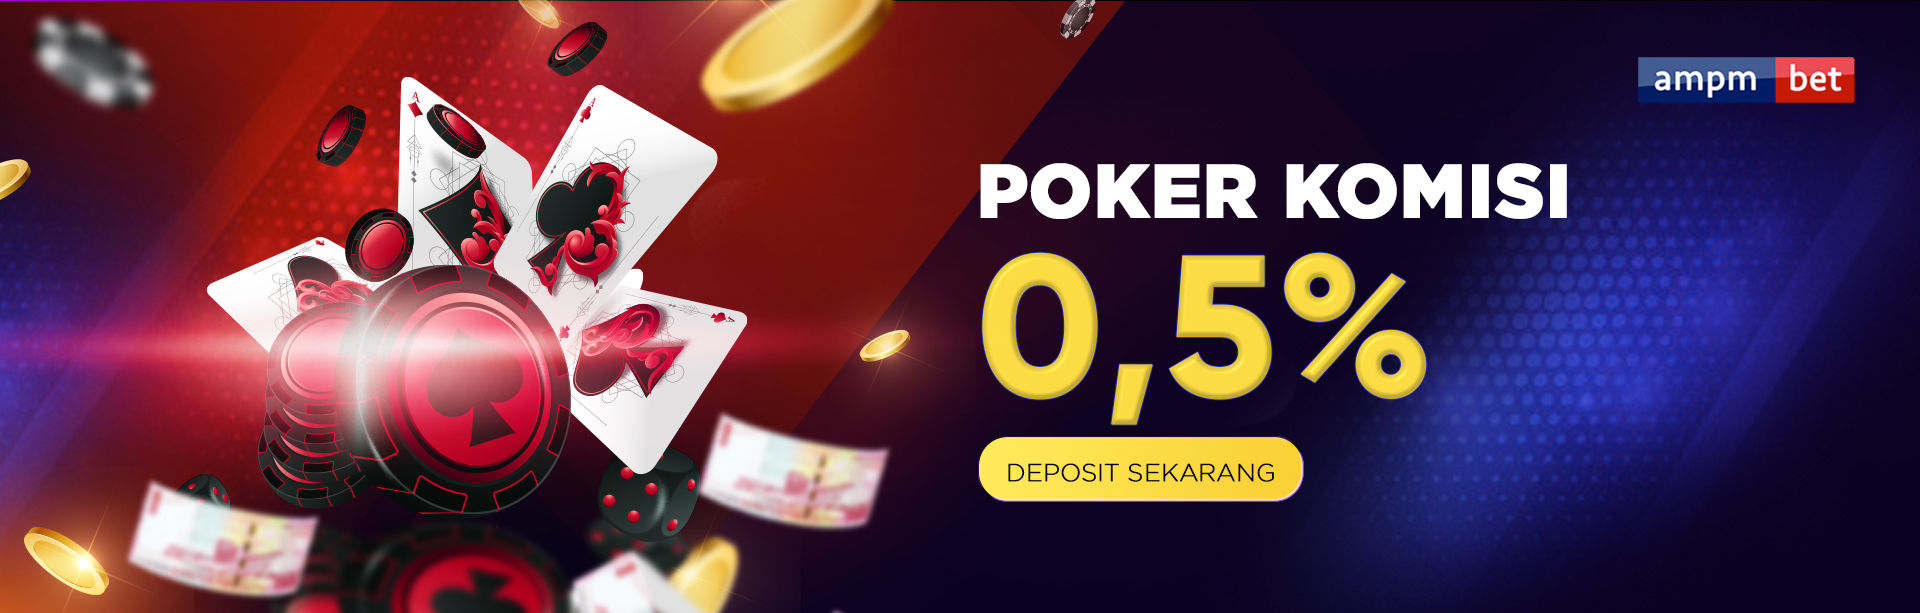 Komisi Poker 0,5% Mingguan